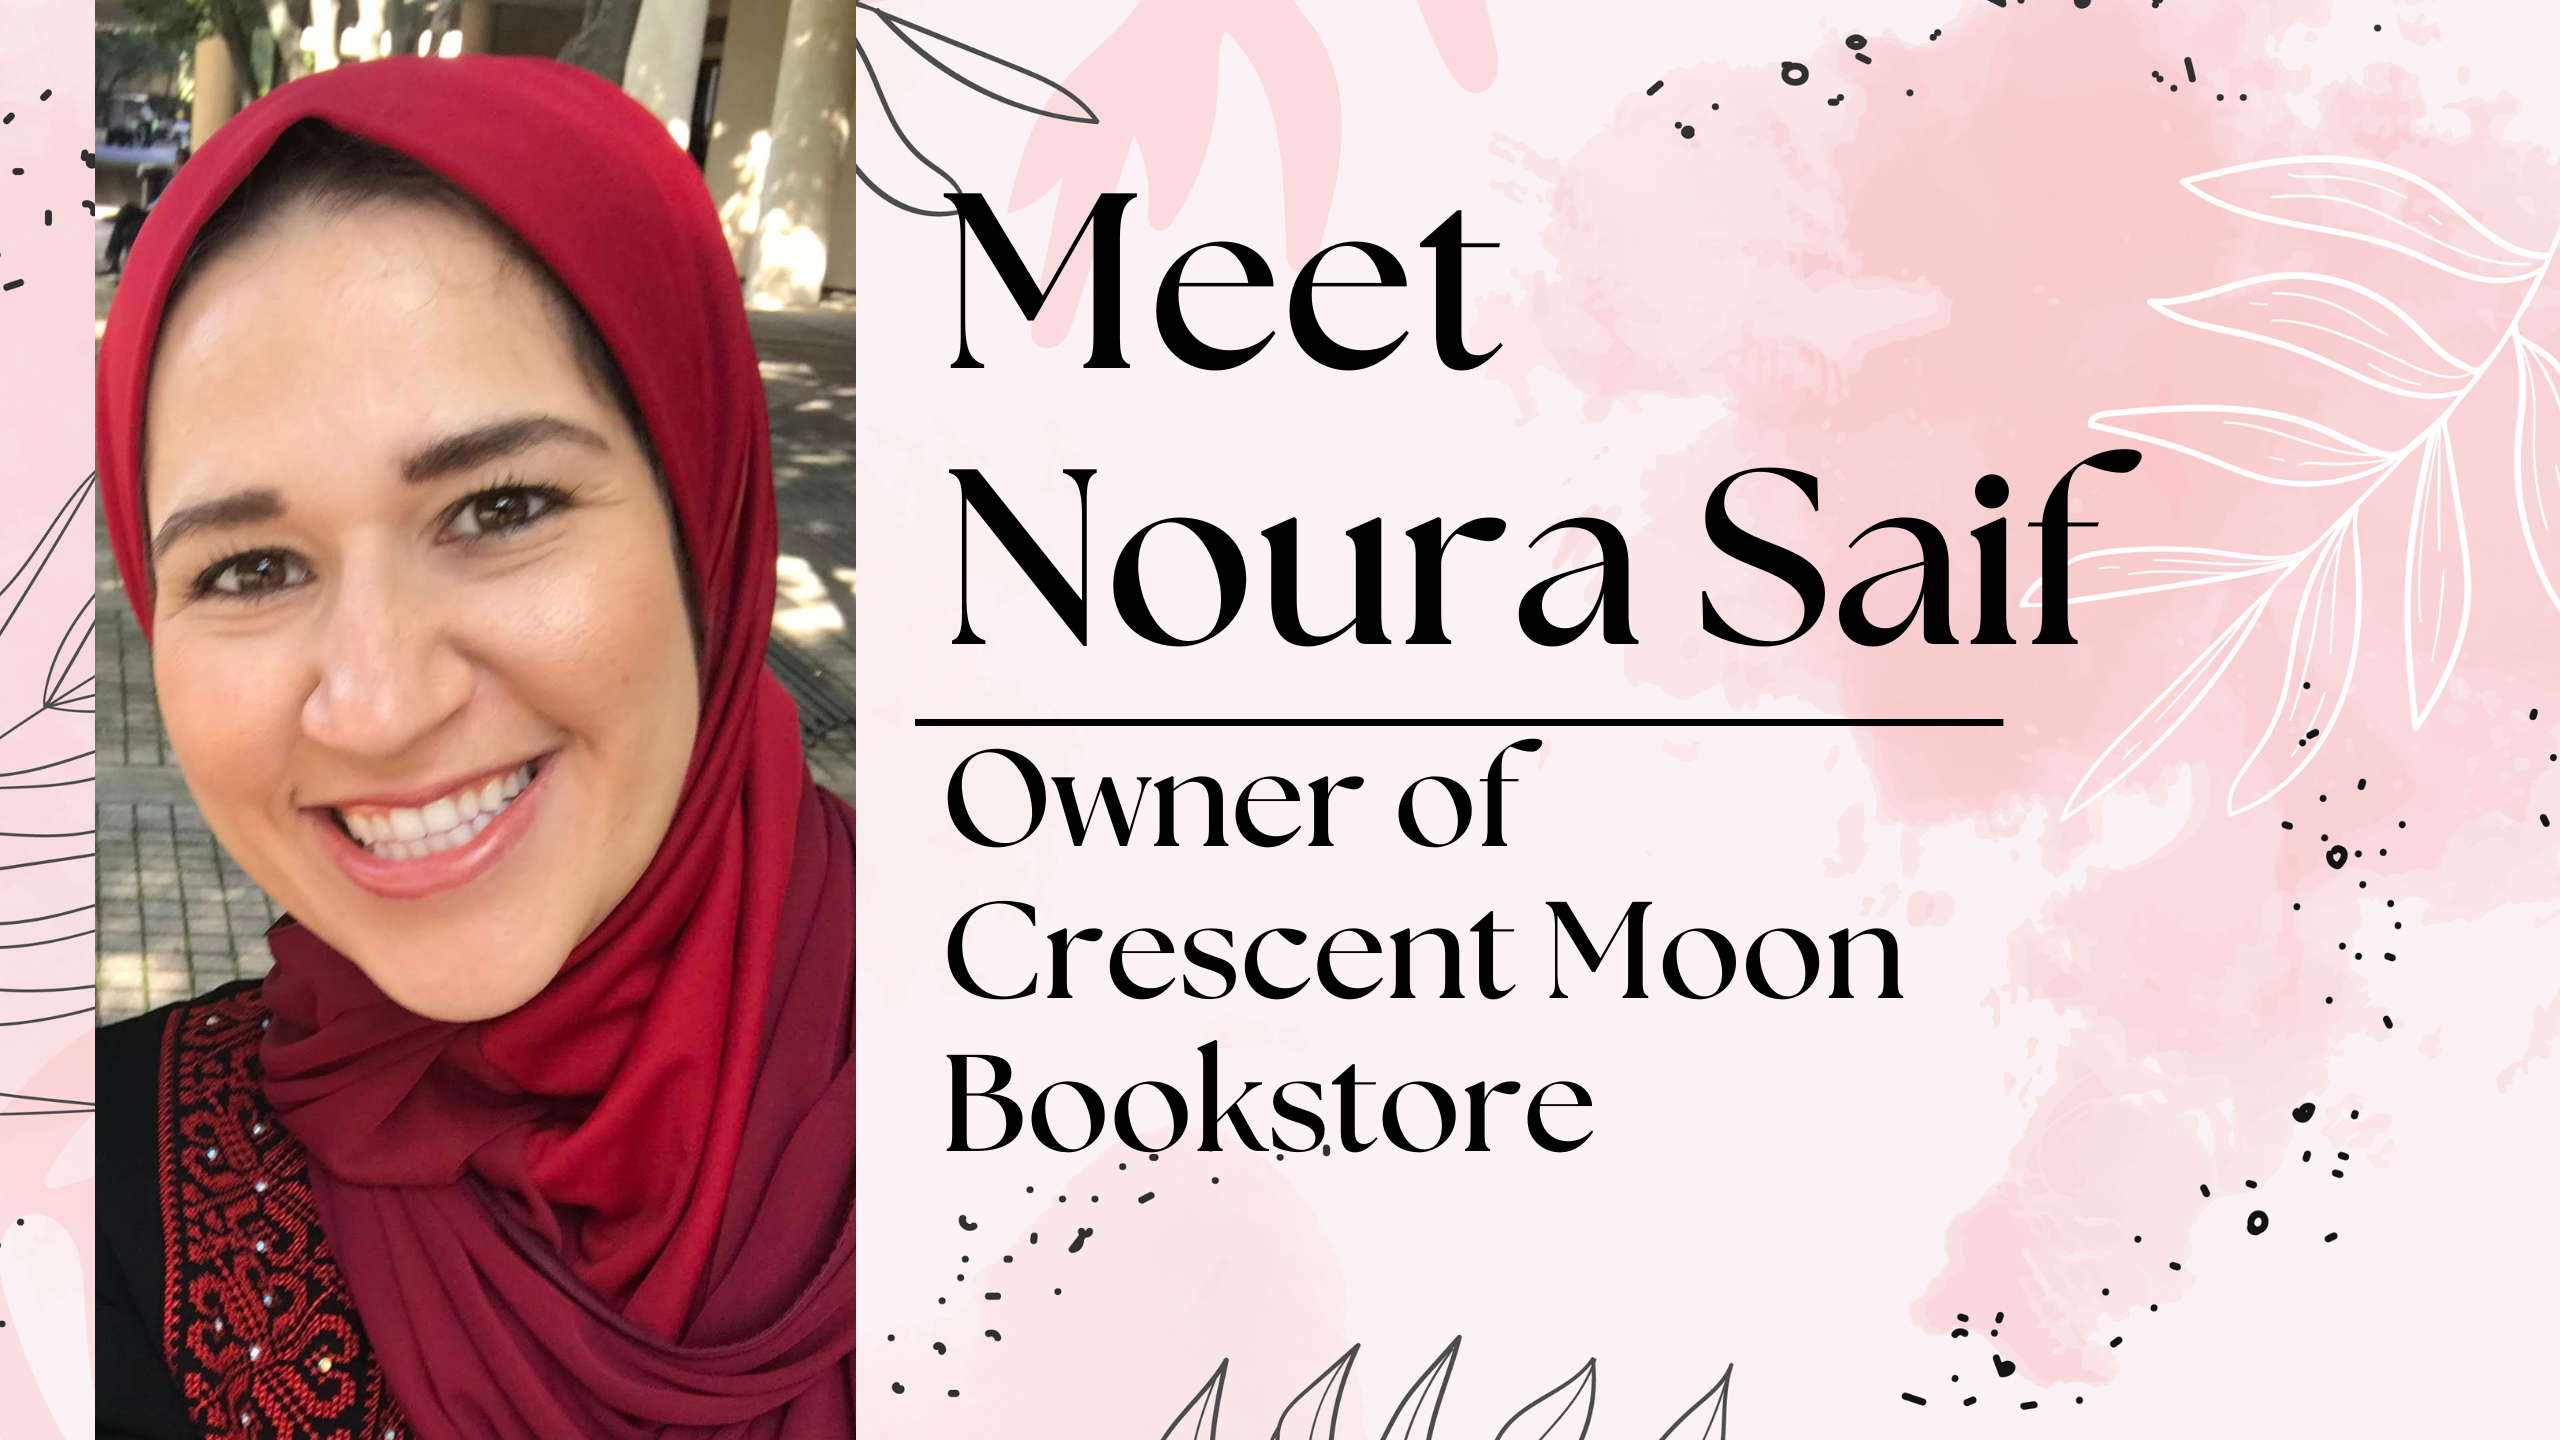 Meet Noura Saif